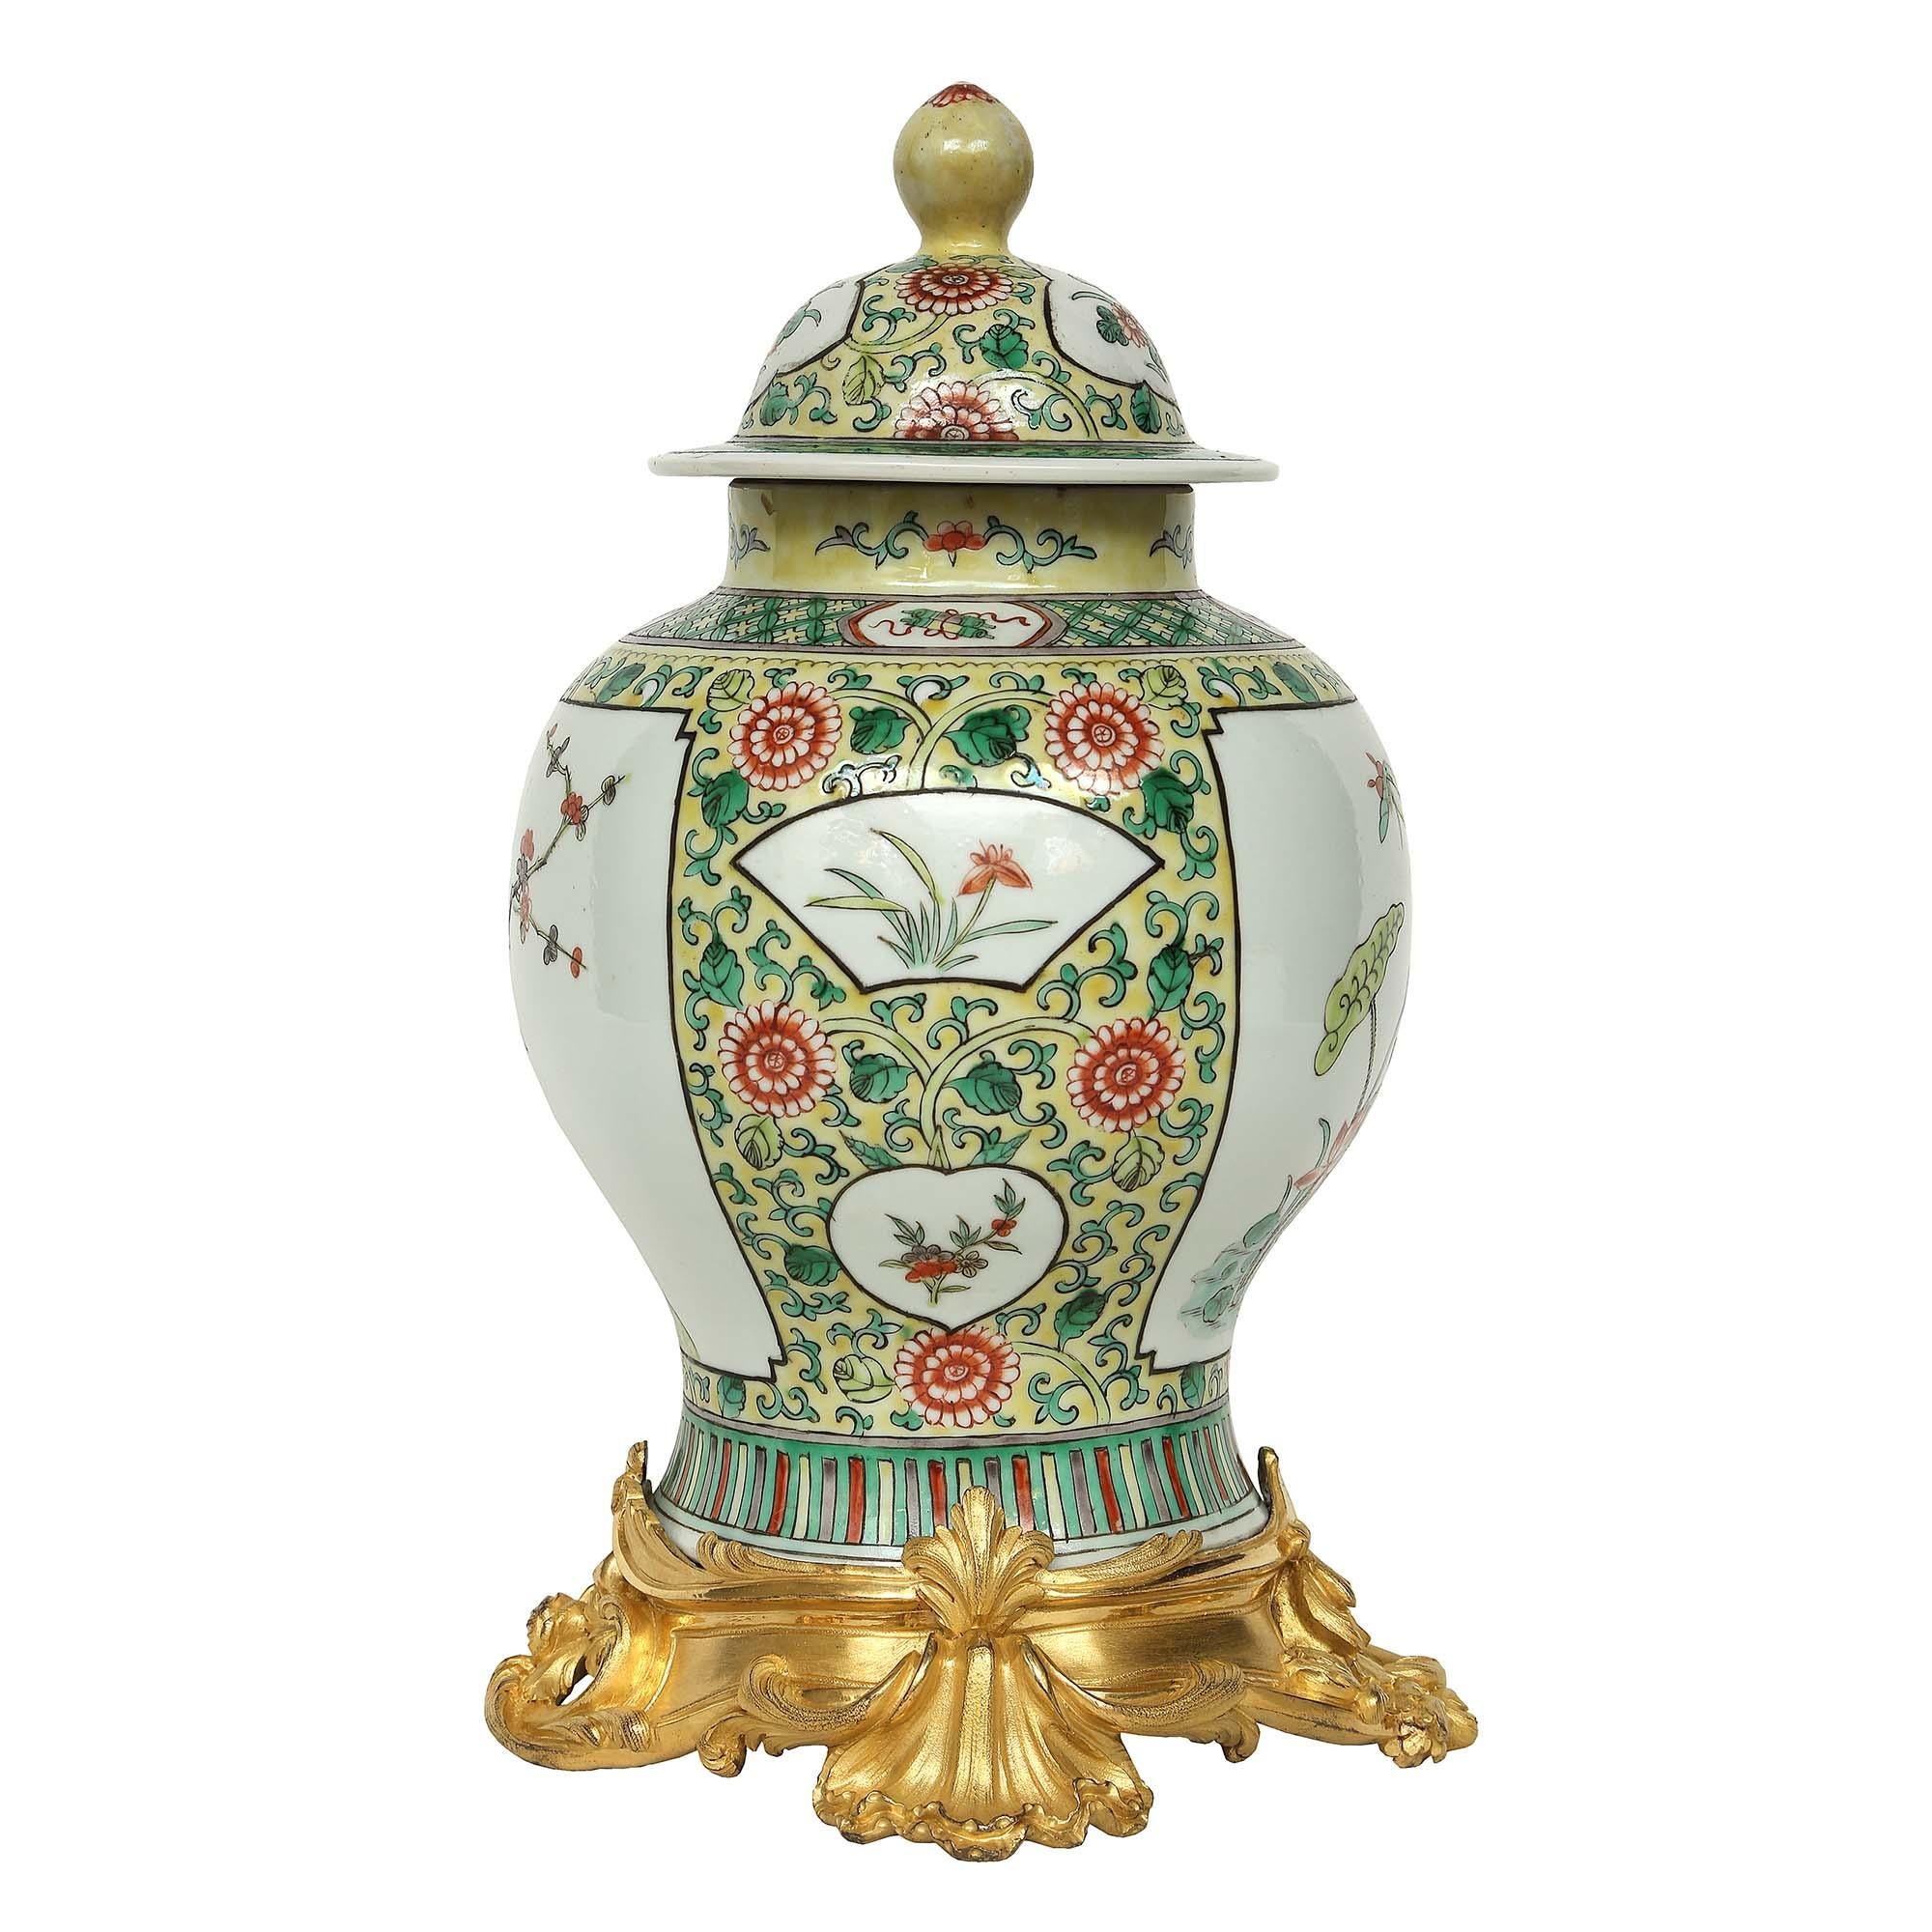 Eine sehr dekorative Famille Verte Urne aus chinesischem Porzellan des 19. Jahrhunderts mit Deckel. Die Urne hat ein wunderschönes Design aus Seerosen mit Schmetterlingen und verschiedenen Blättern auf gelbem Hintergrund mit einem verschlungenen